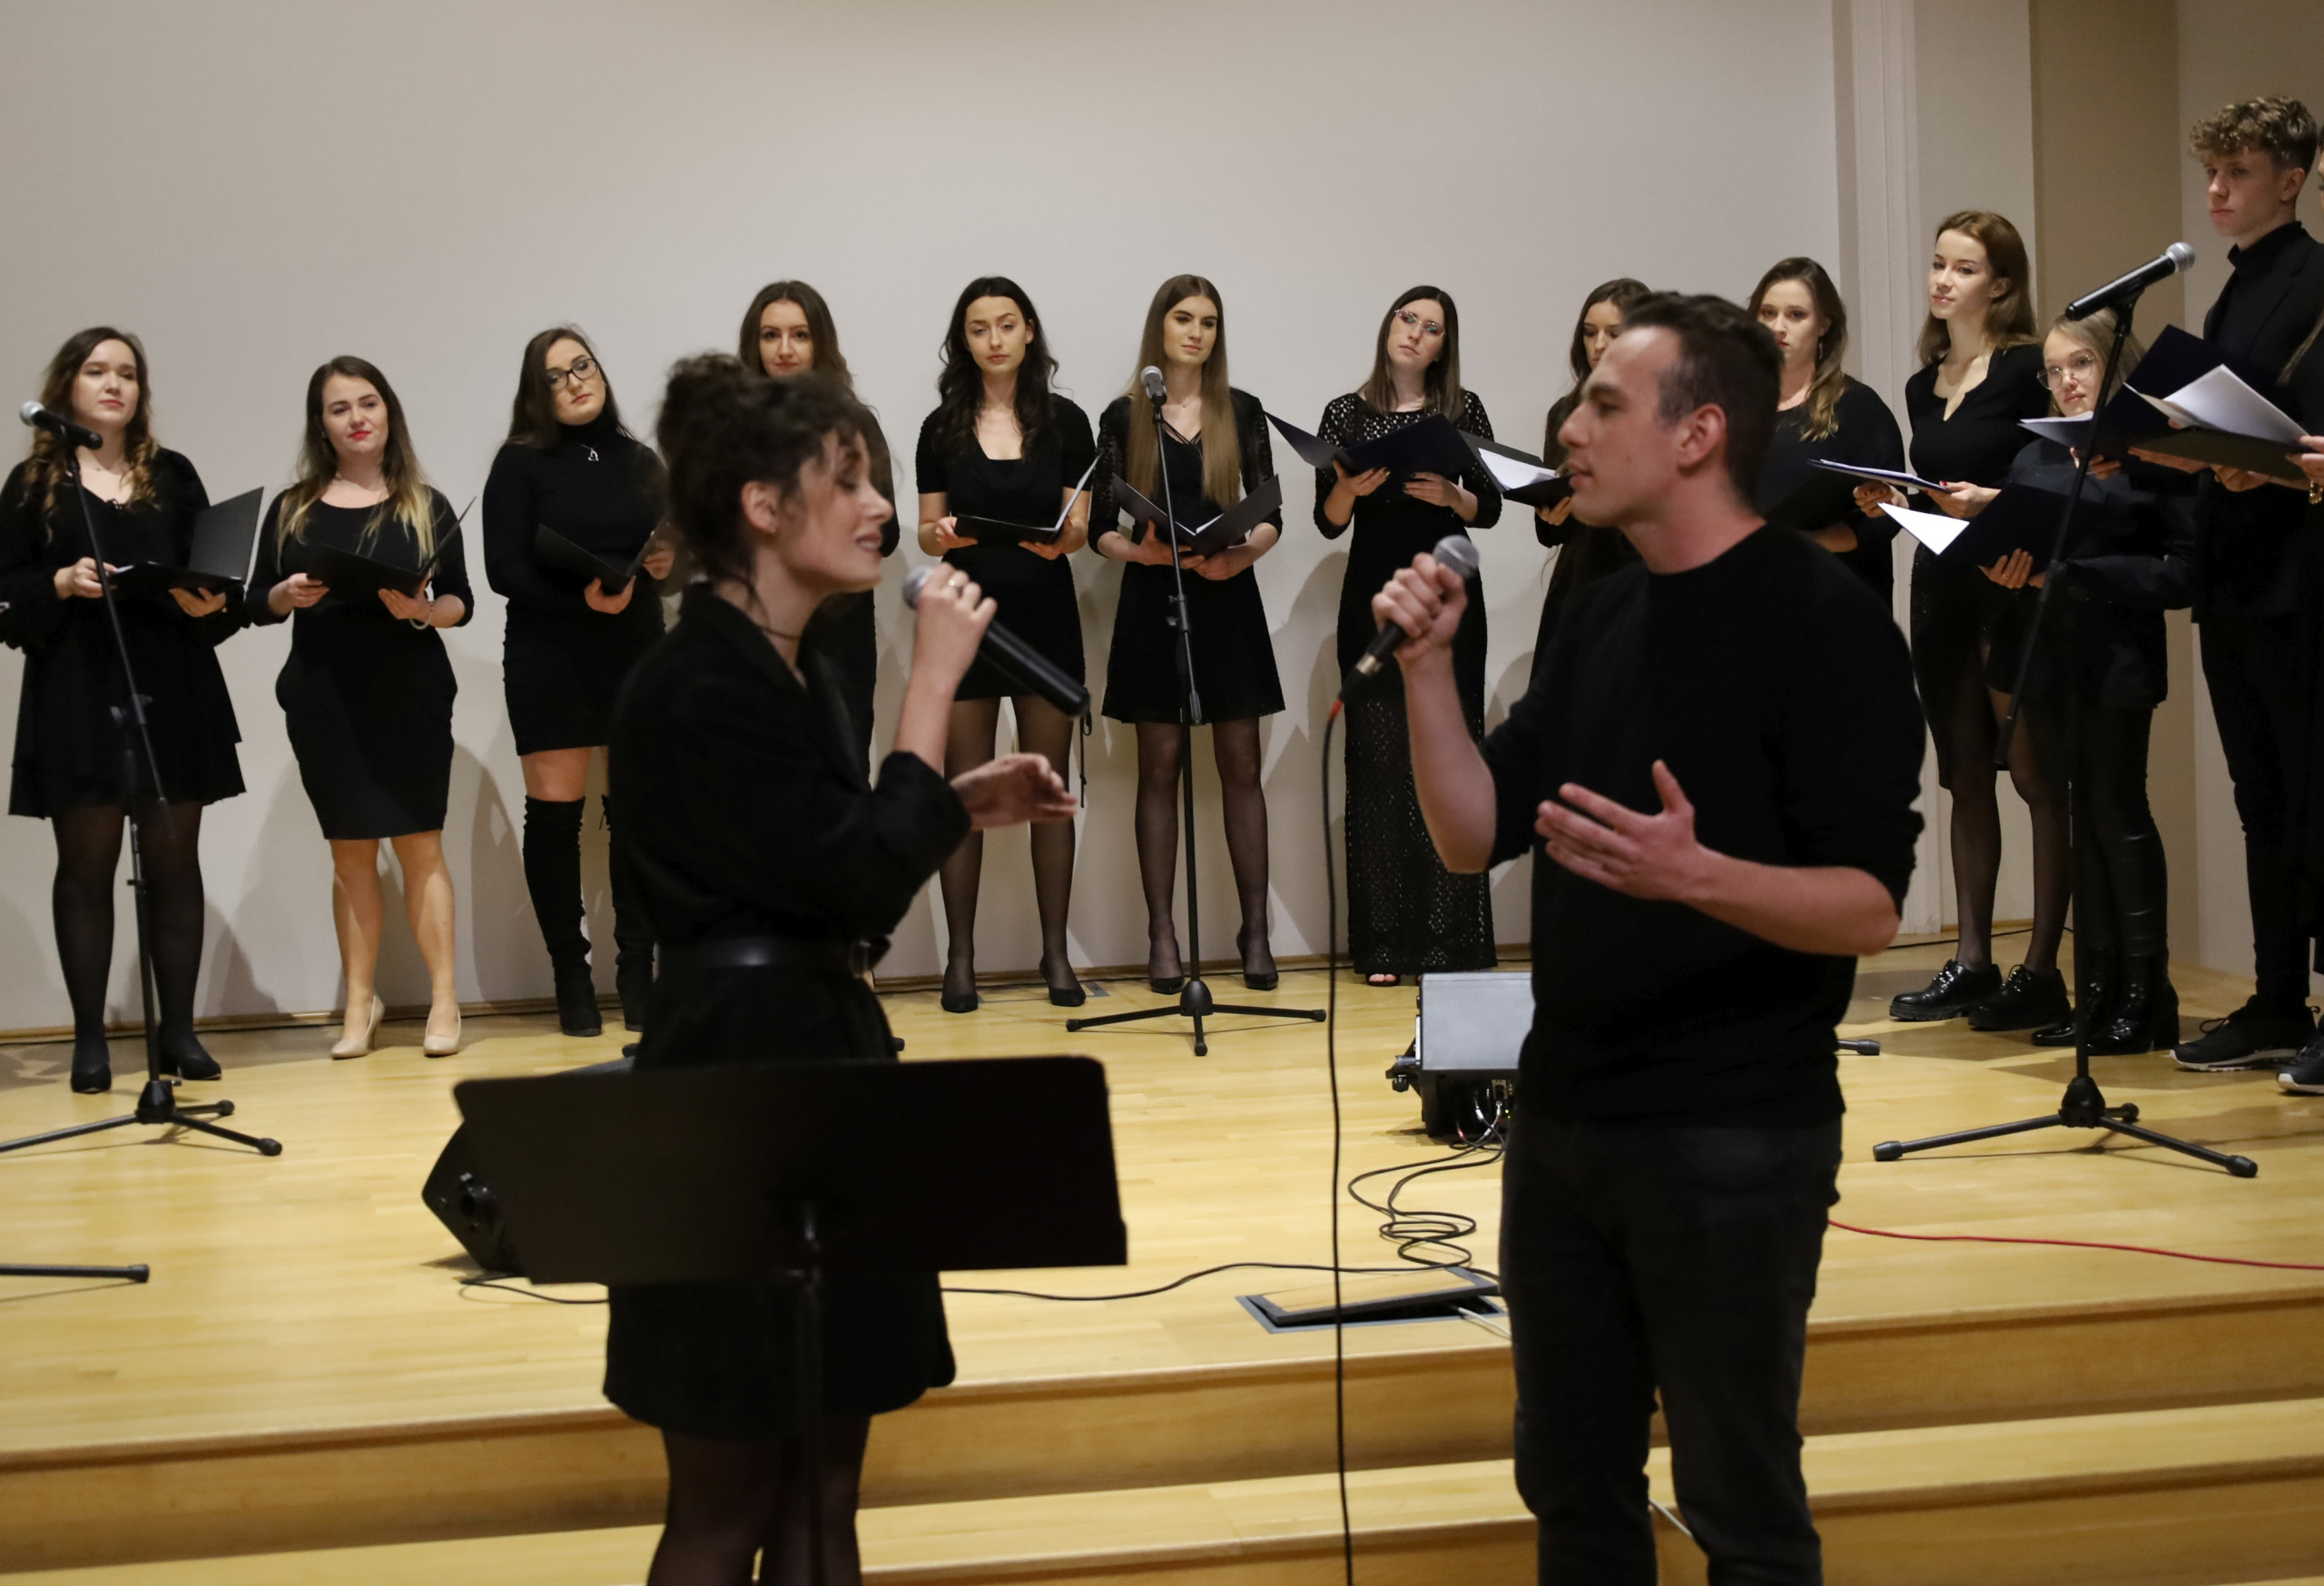 Duet studentów przy mikrofonie, w tle chór złożony z pozostałych studentów UJK.